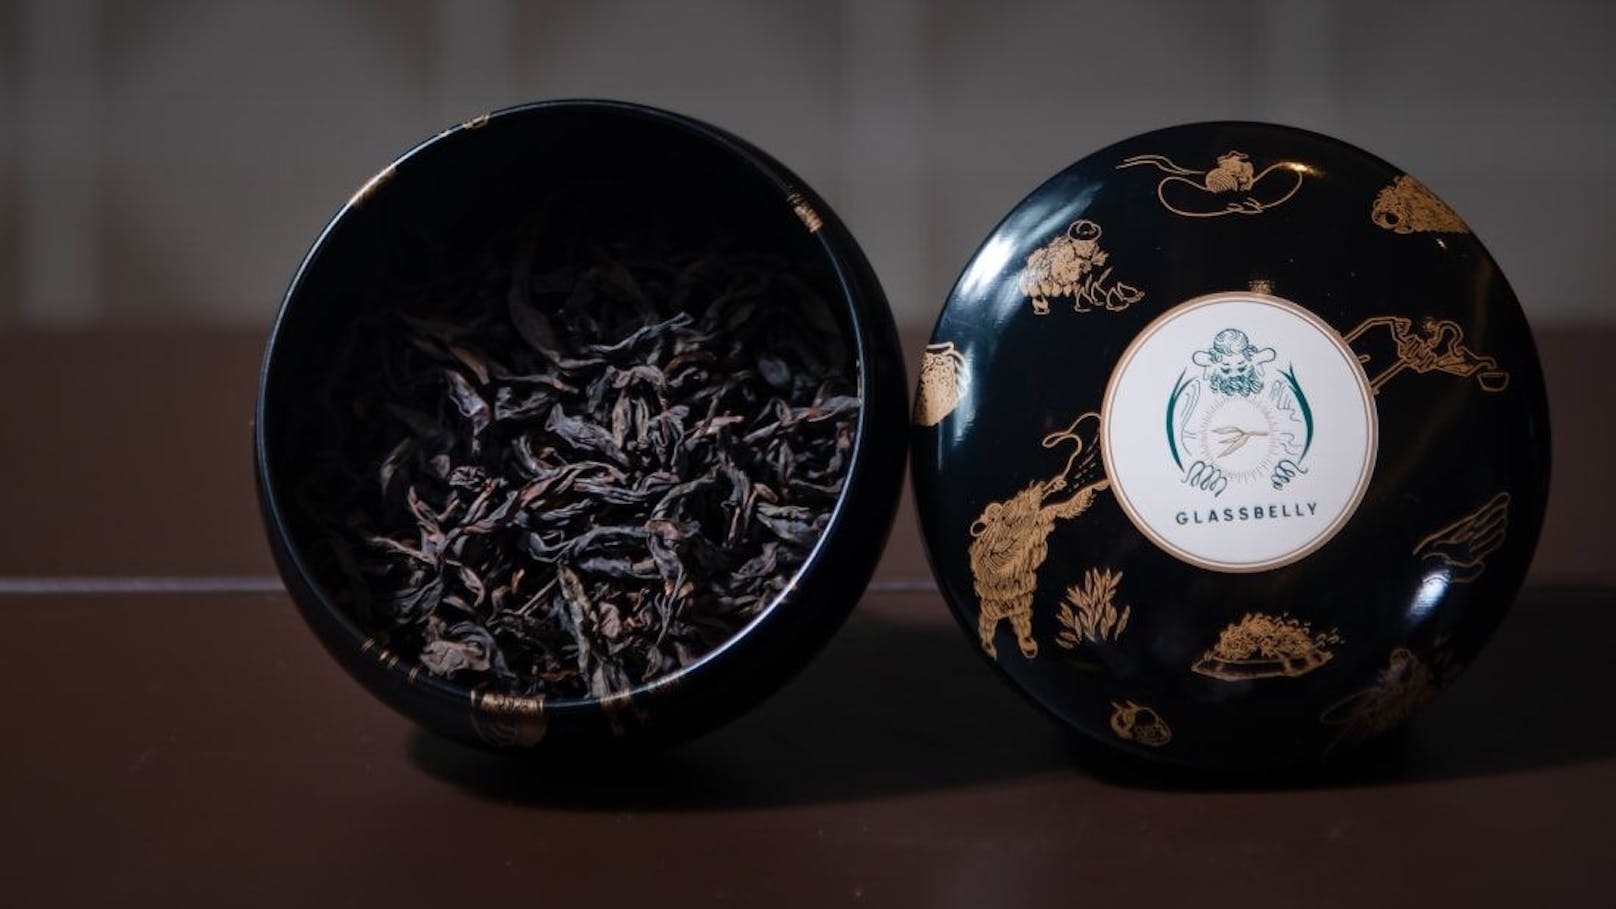 Mit einem Preis von 4.000 Euro&nbsp;pro Dose (25 Gramm) ist Niu Lan Keng Rougui einer der teuersten chinesischen Tees auf dem Markt.